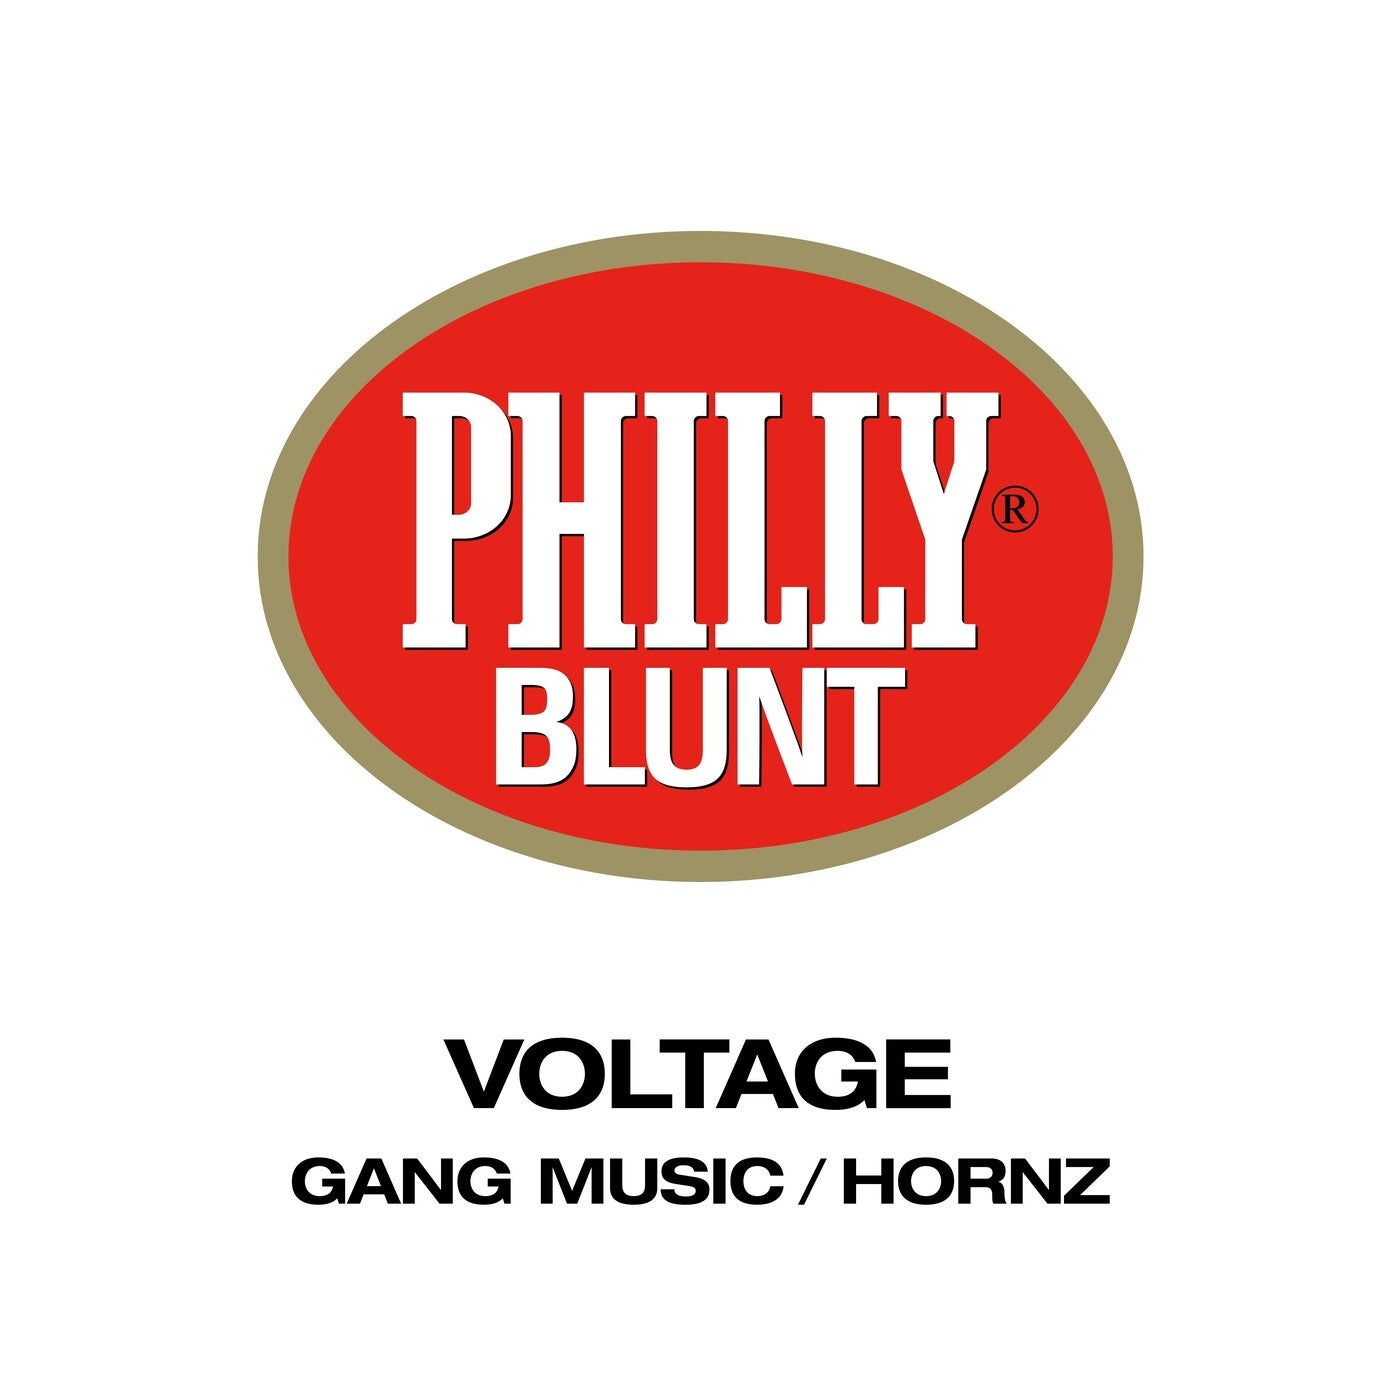 Gang Music / Hornz